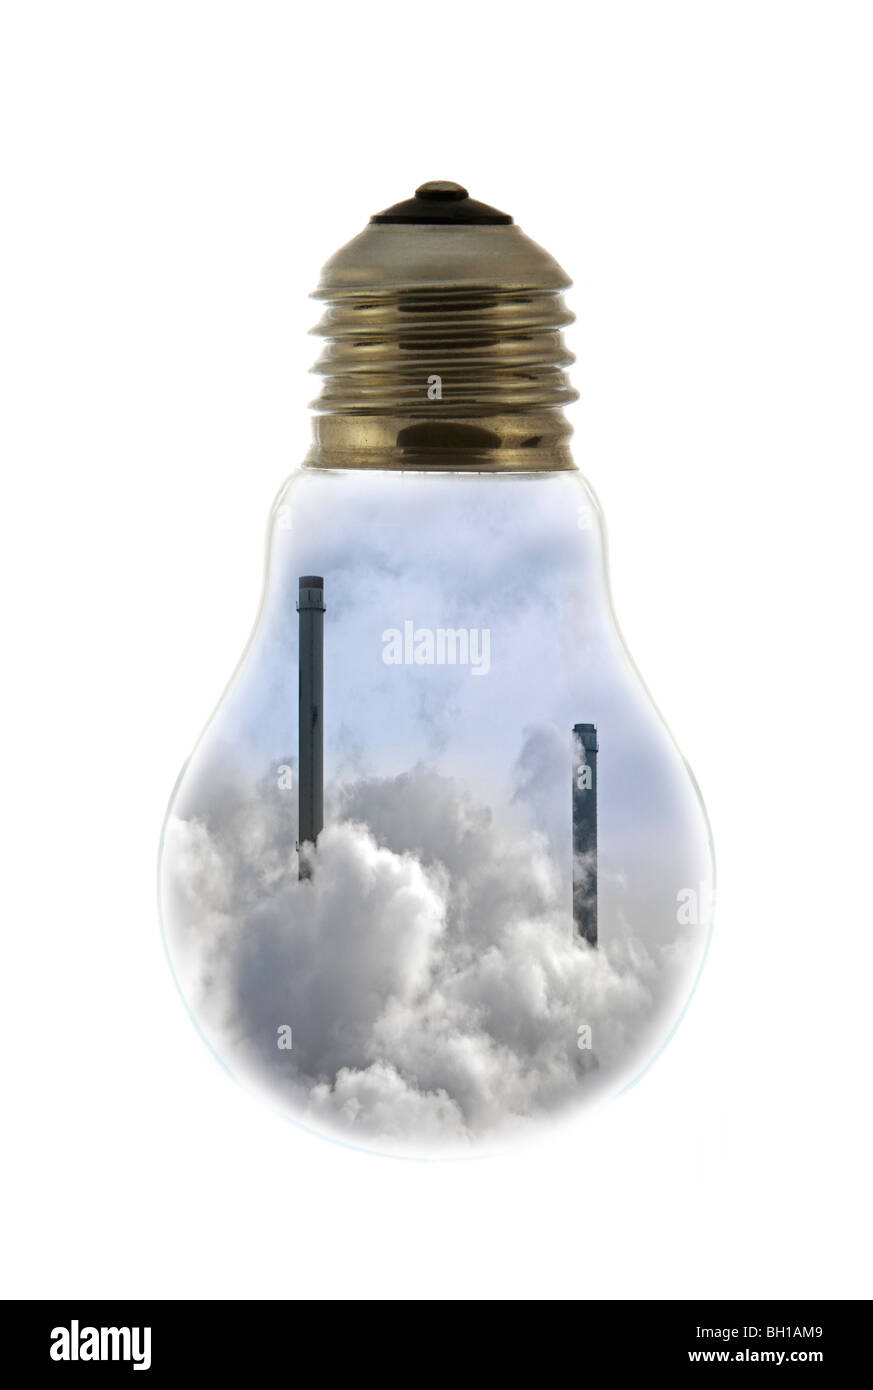 Schornsteine bedeckt in Rauch innen weißglühende Lampe / Birne vor weißem Hintergrund Stockfoto